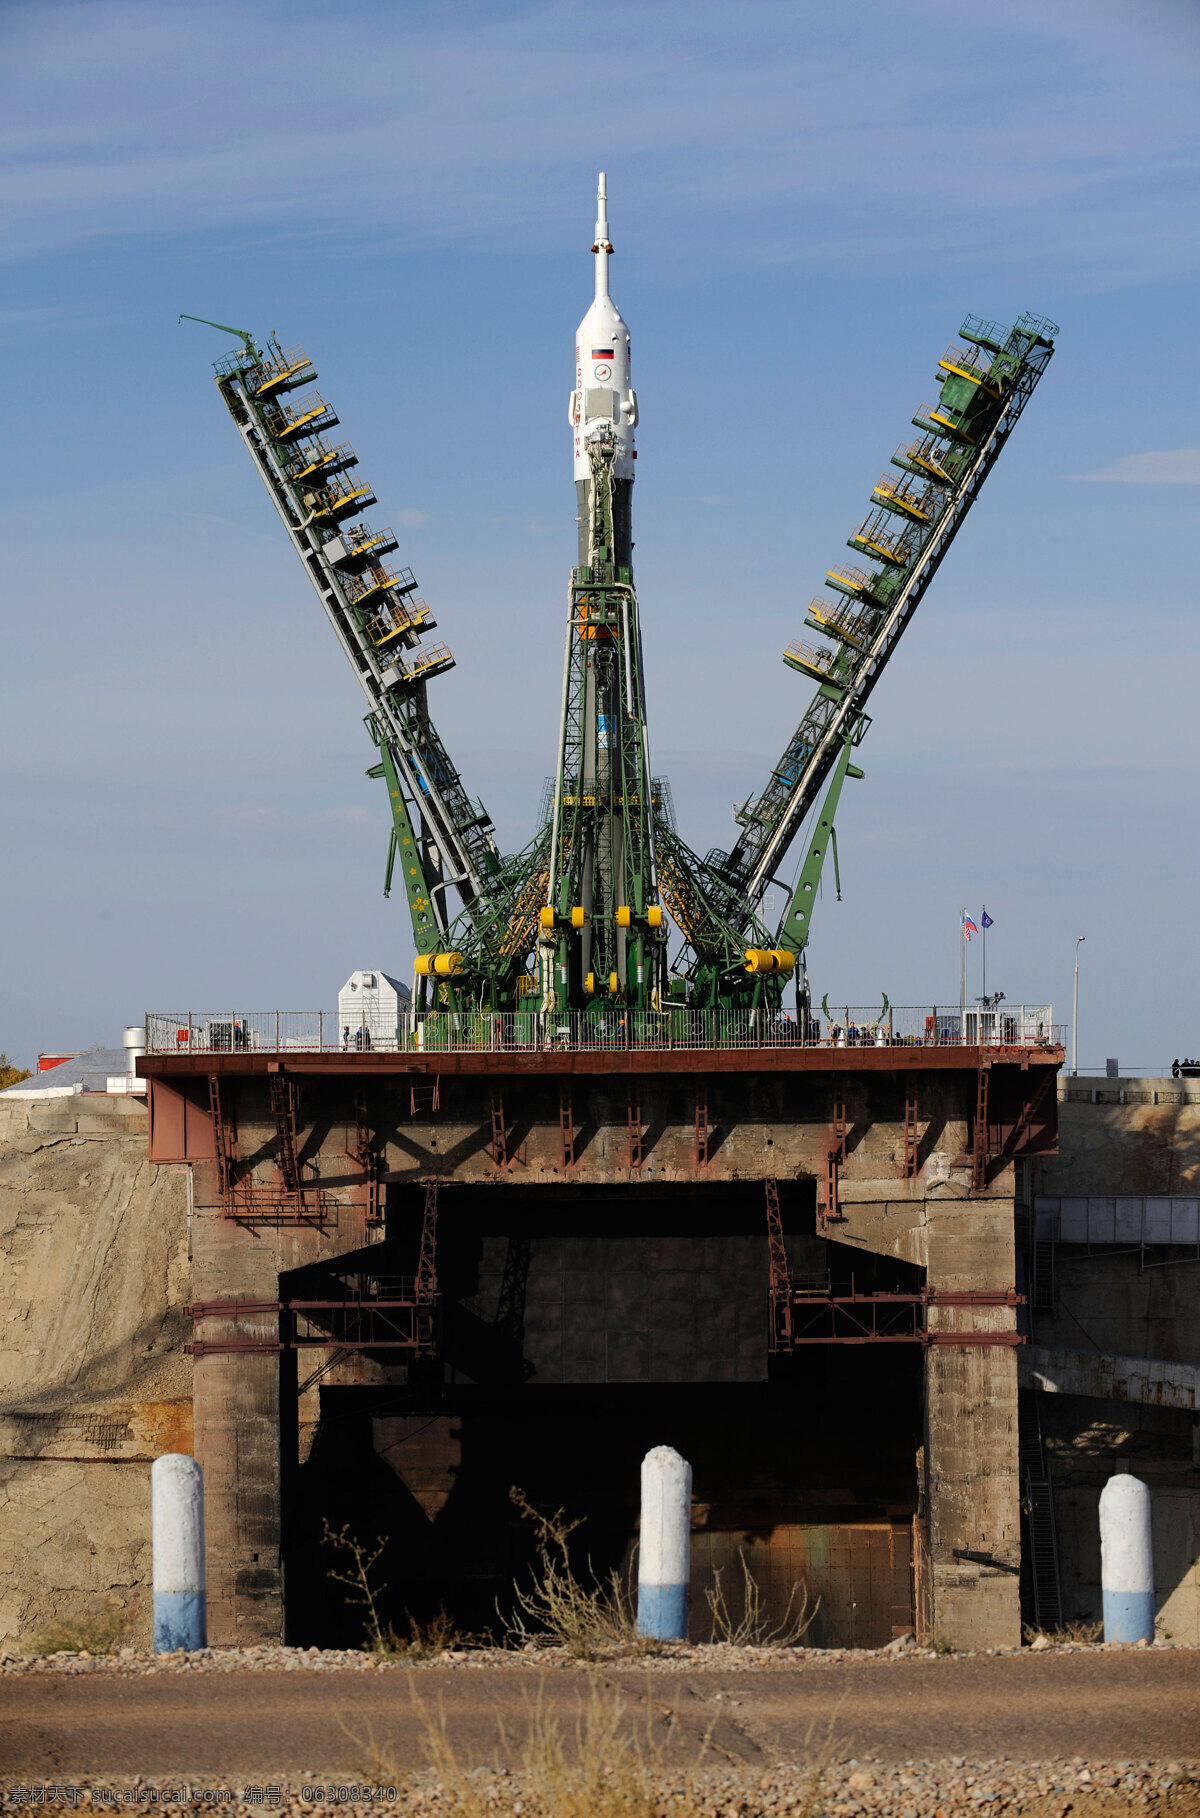 联盟火箭 俄罗斯 航天火箭 战争 现代科技 军事 武器 火箭 发射 宇航 升空 科技 科学研究 摄影图库